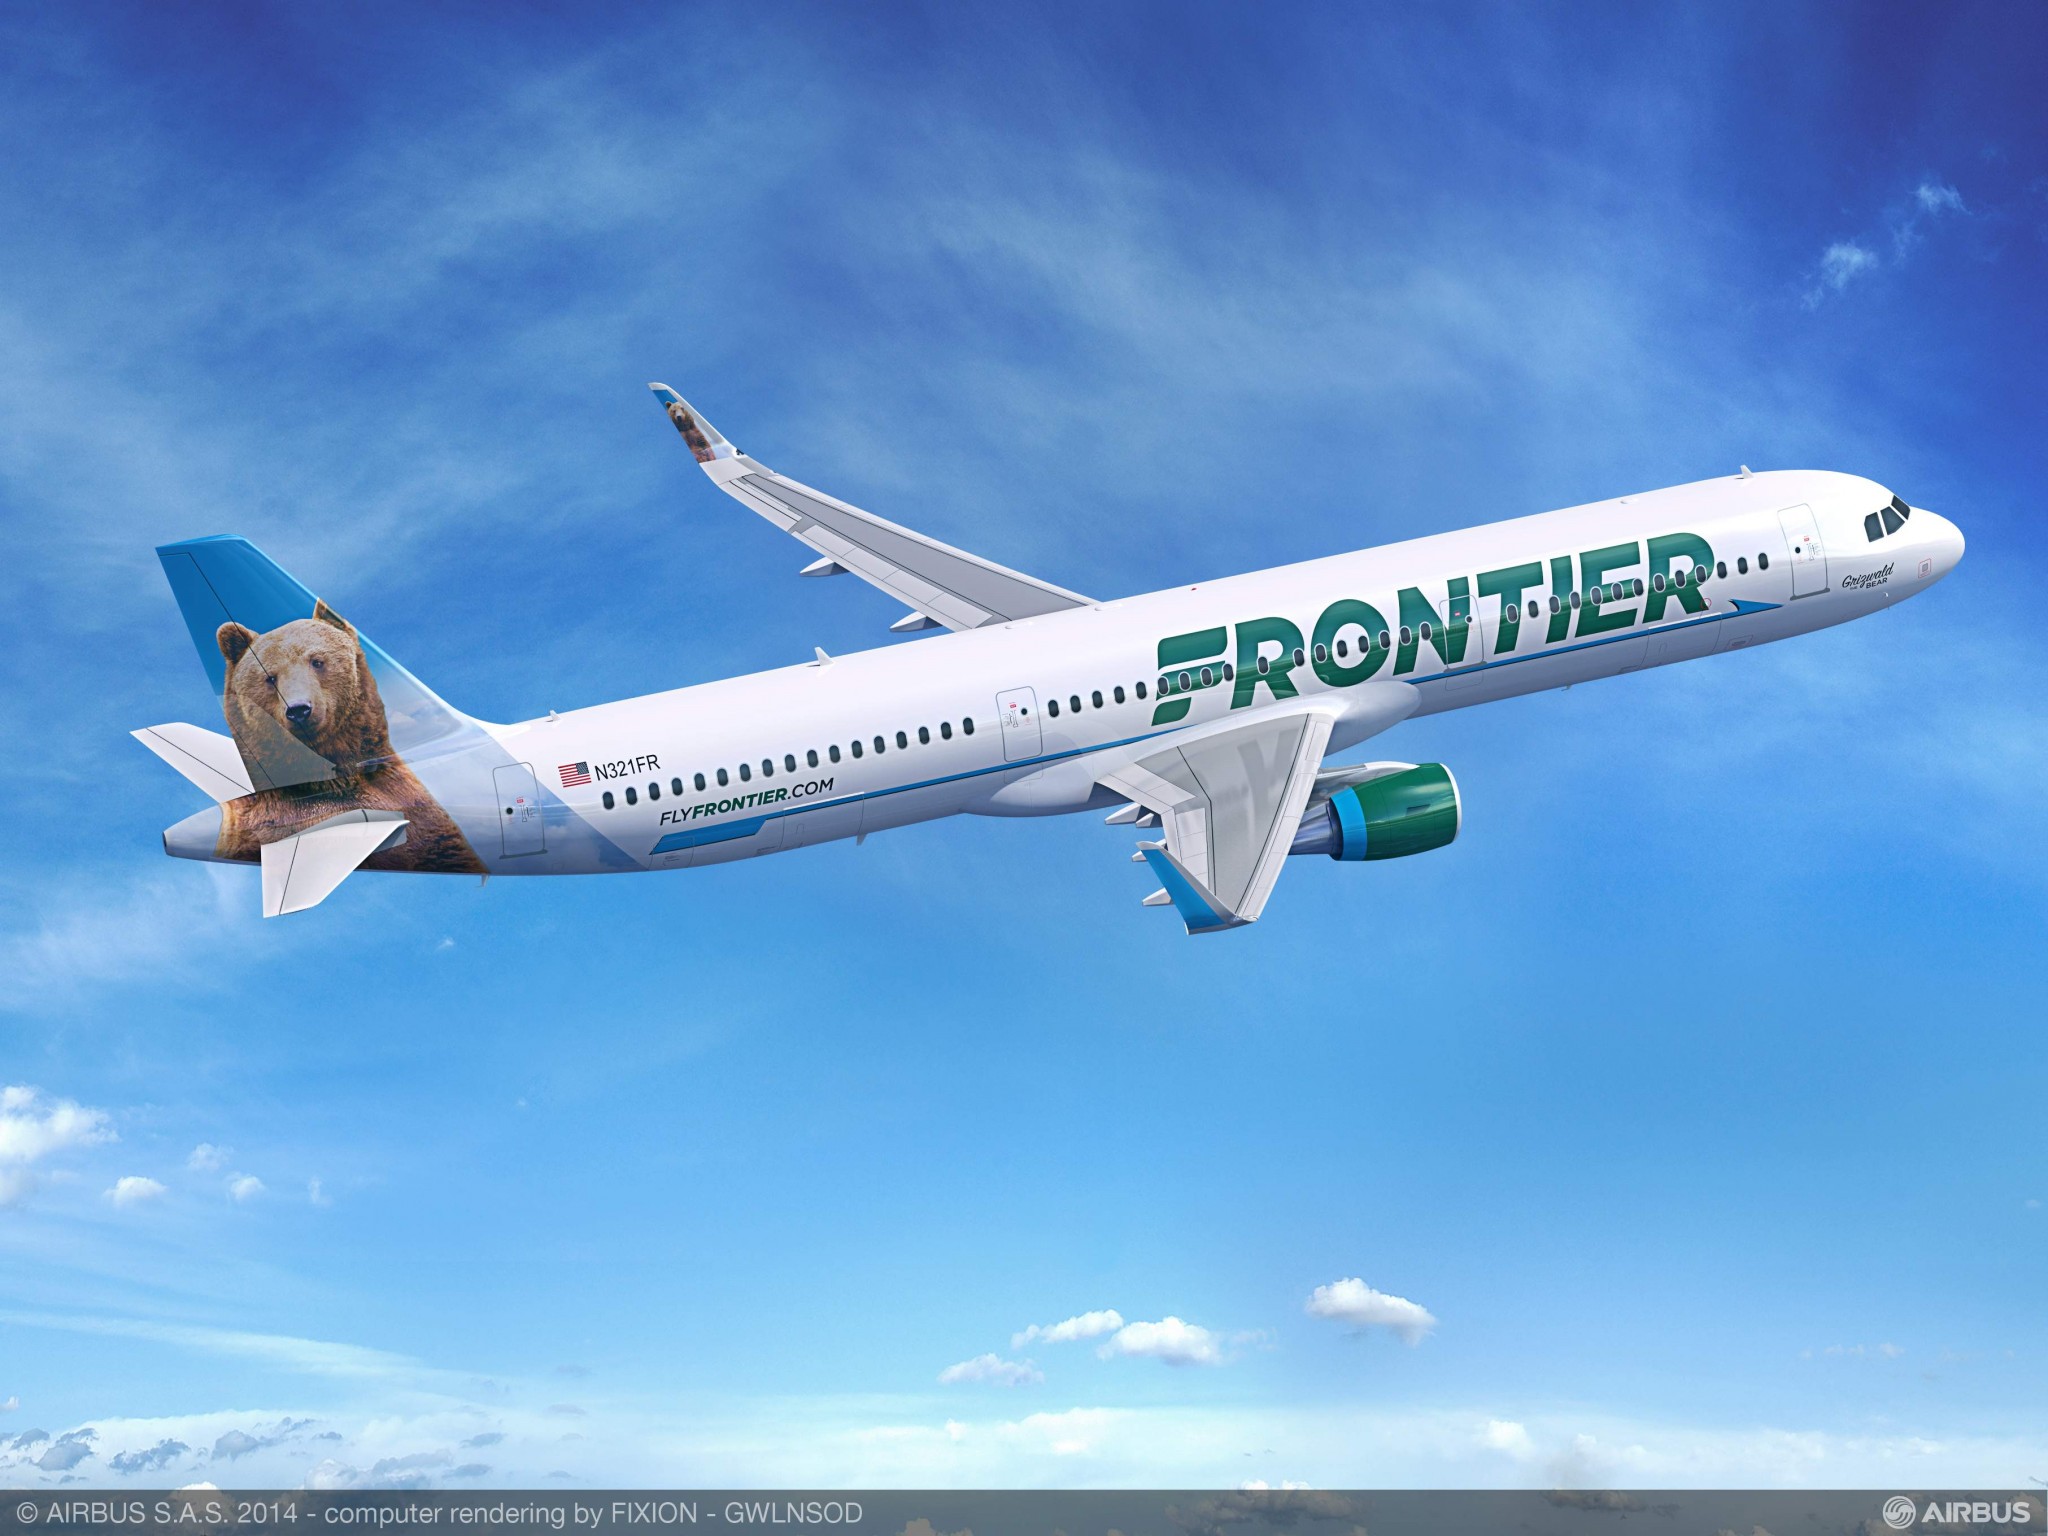 Frontier Airlines adds new service in ten US cities